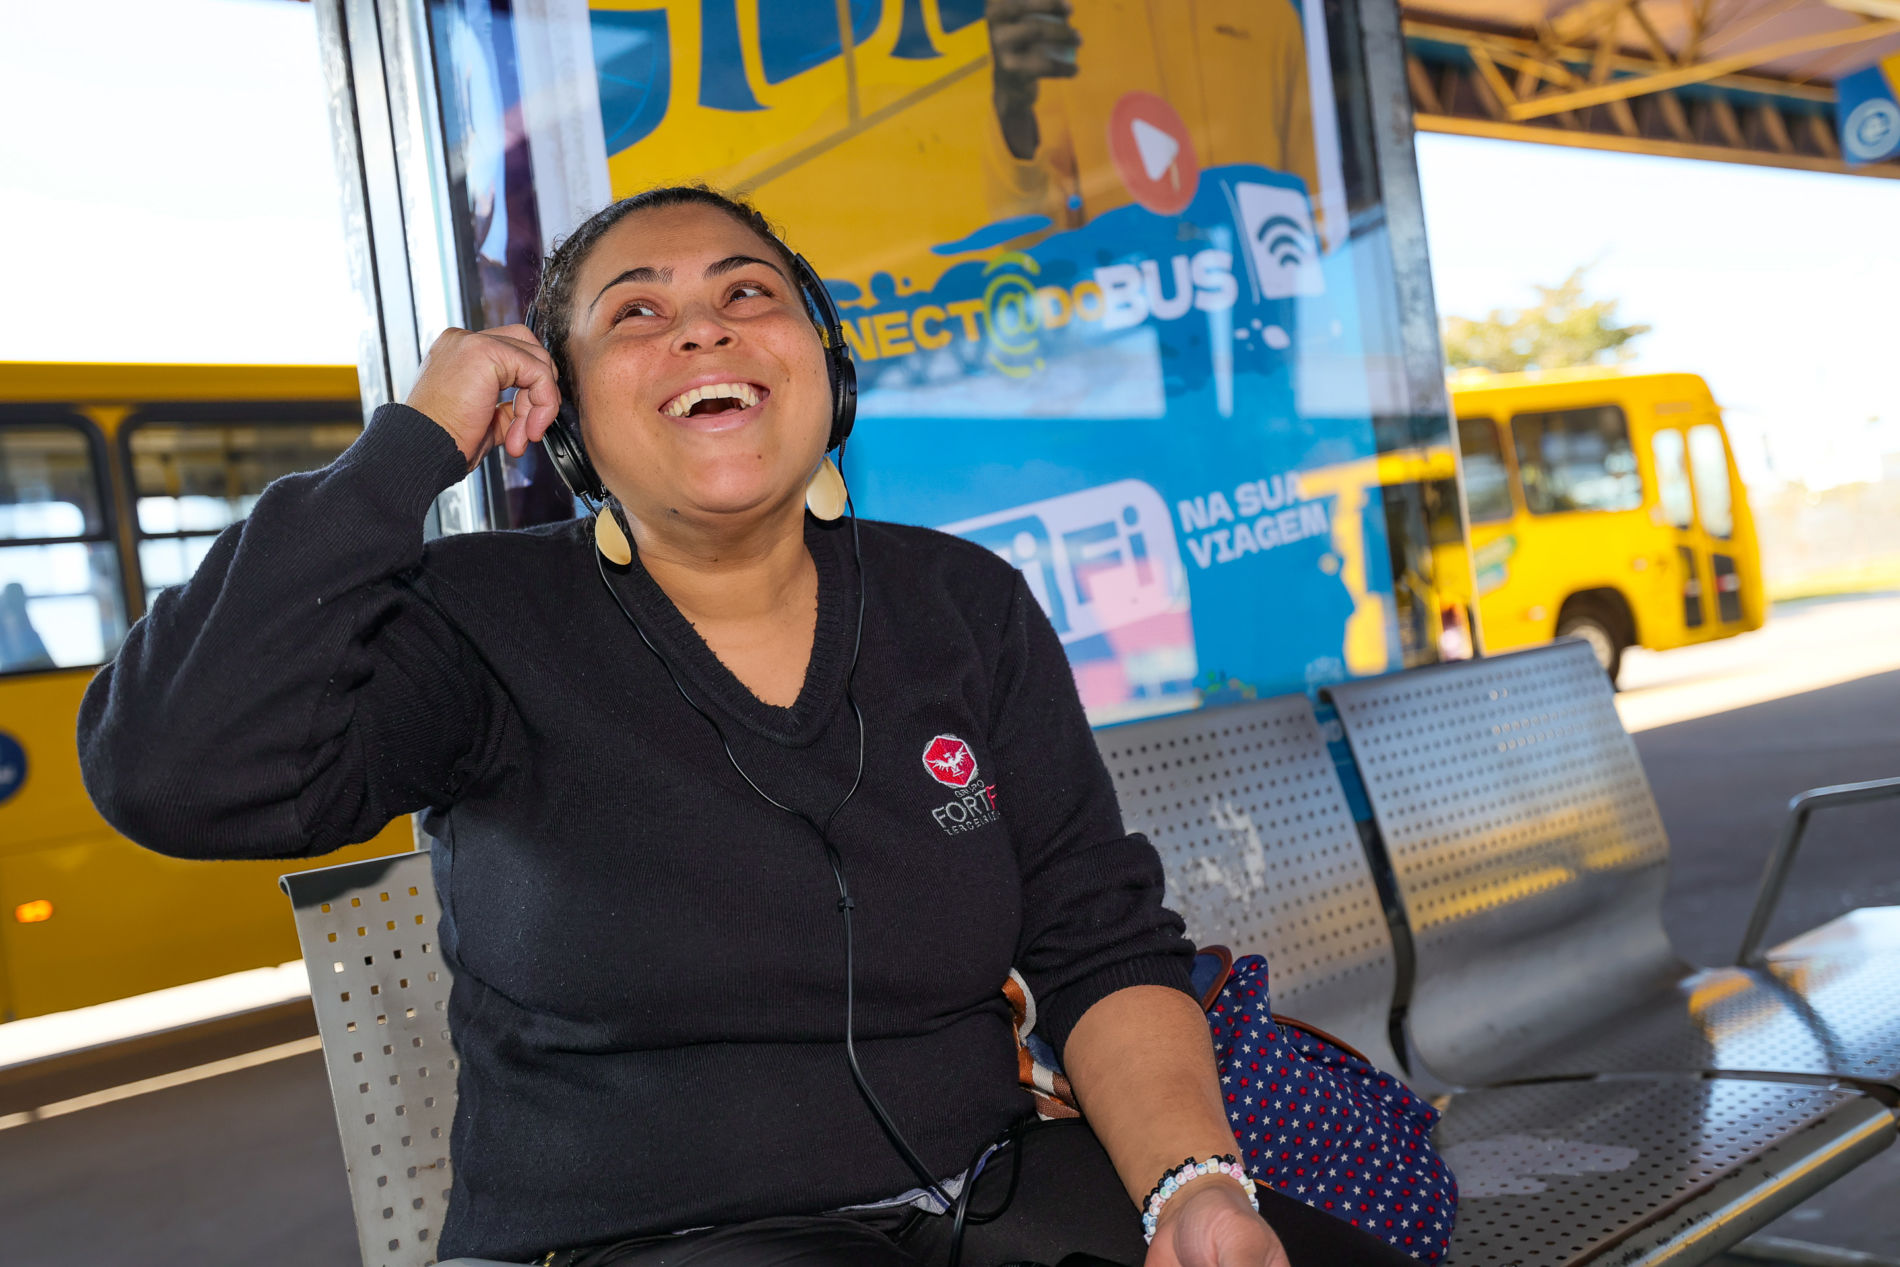 Los autobuses de Jundiaí tienen Wi-Fi gratuito